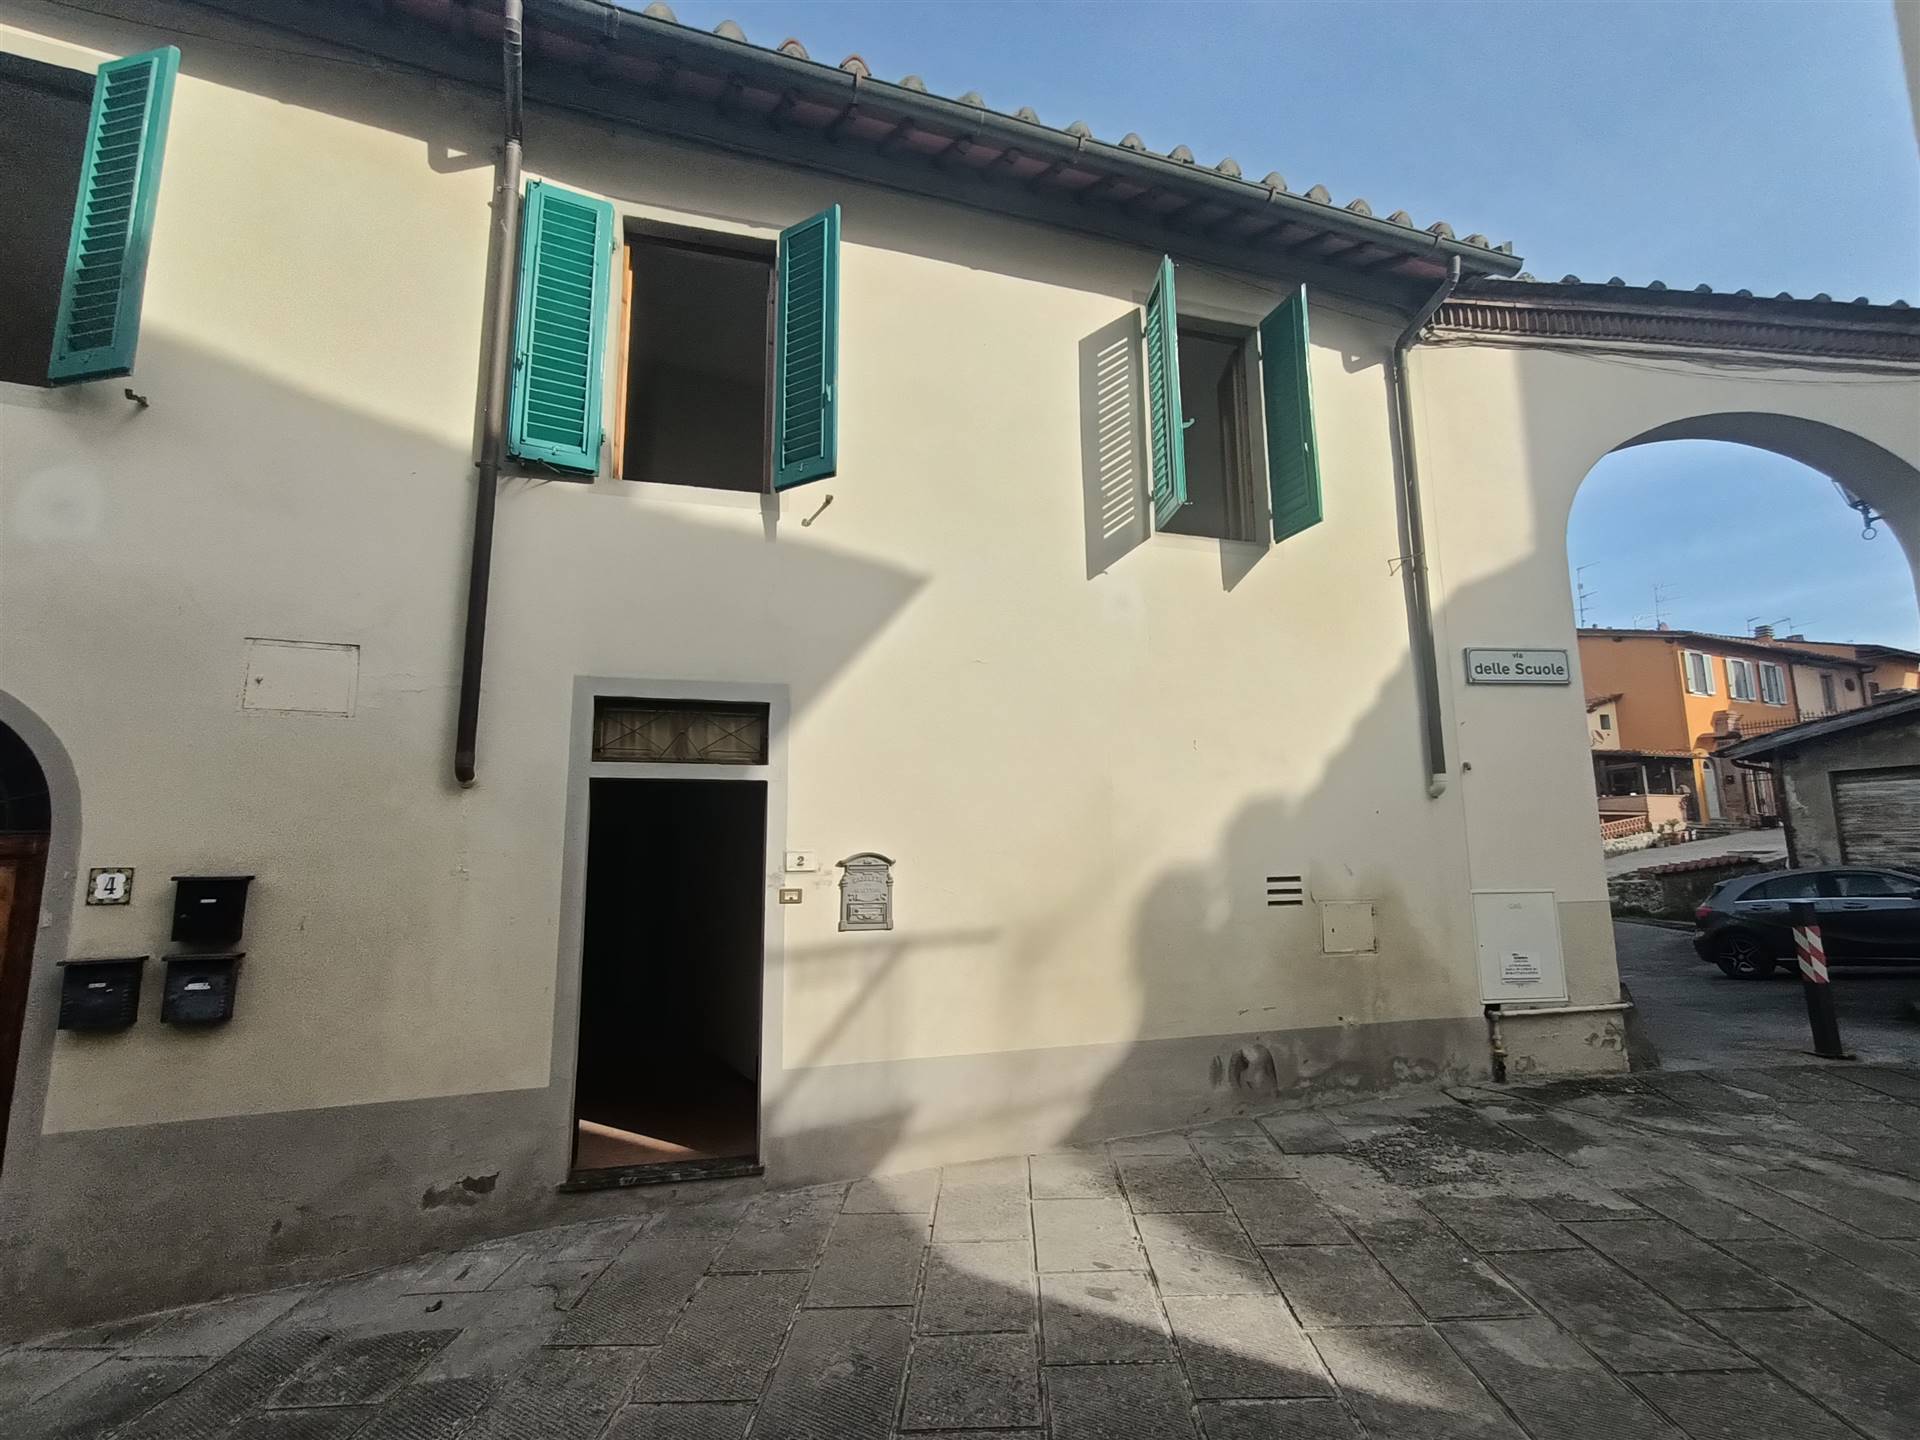 Soluzione Indipendente in vendita a Castelfranco Piandiscò, 5 locali, zona Località: FAELLA, prezzo € 118.000 | CambioCasa.it